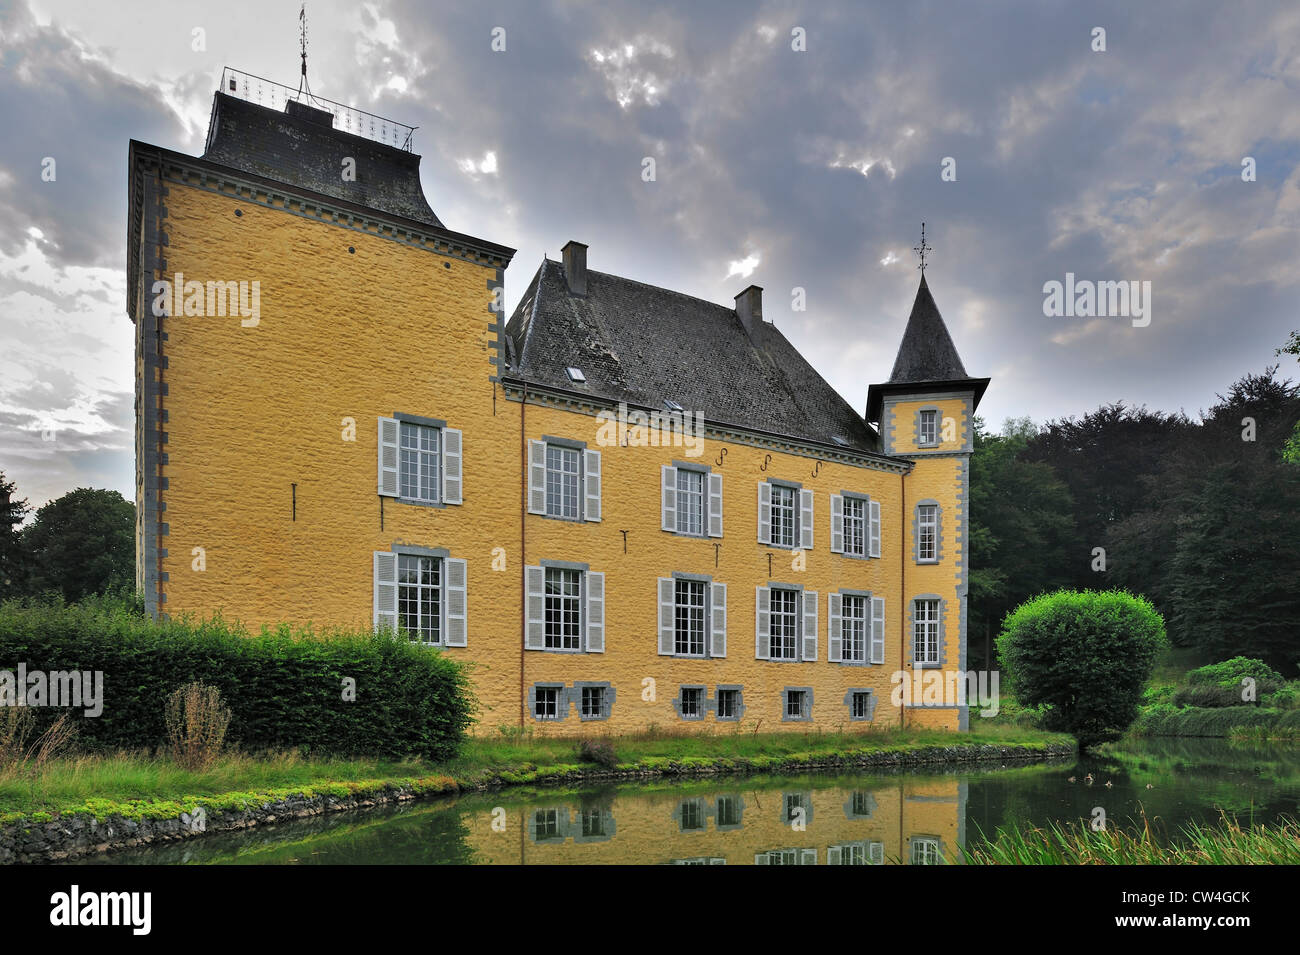 The castle château de Haversin near Ciney, Namur in the Belgian Ardennes, Belgium Stock Photo